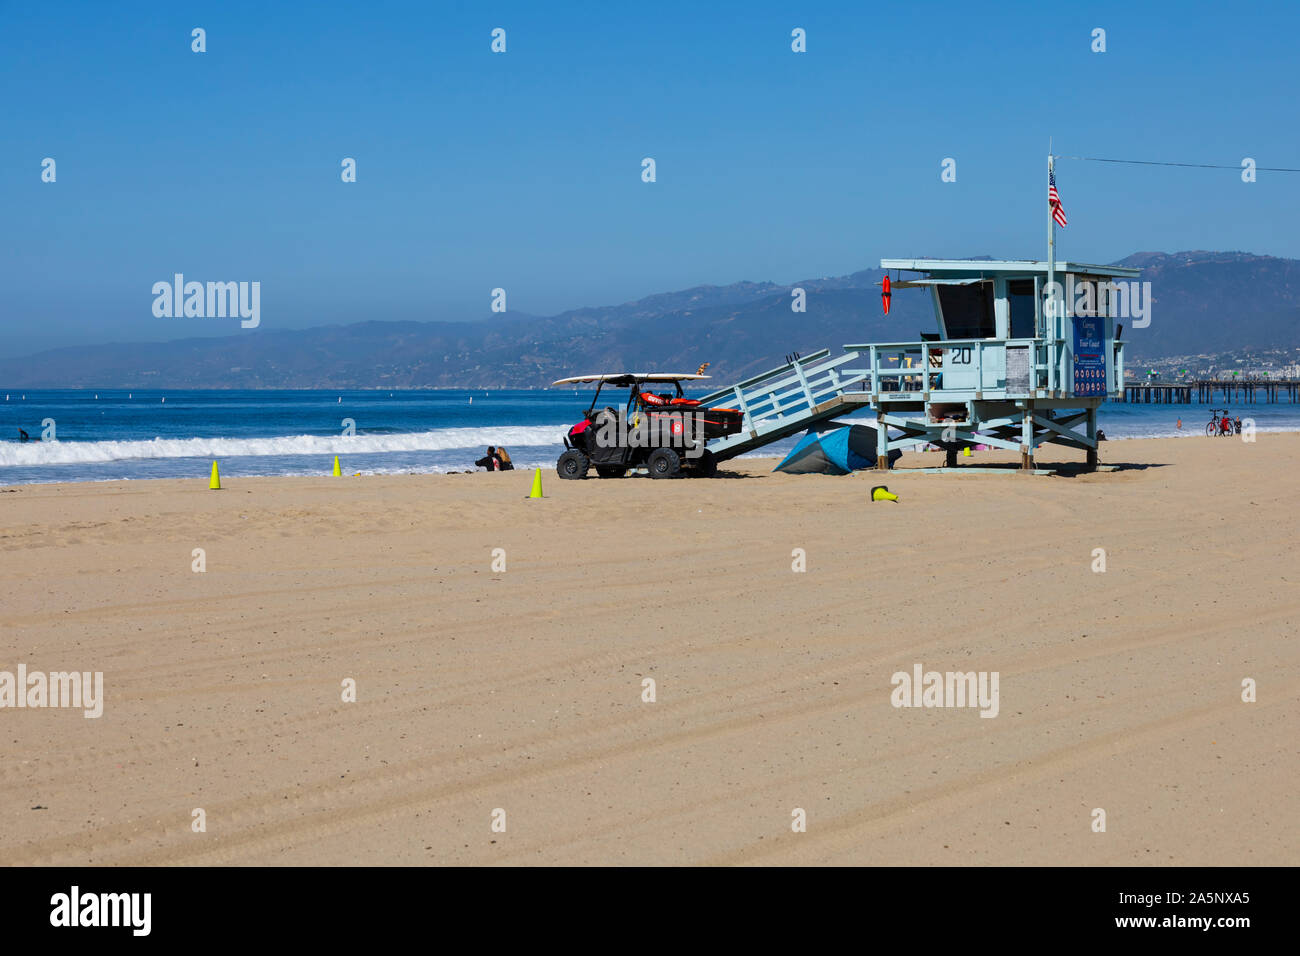 Rettungsschwimmturm am Strand von Santa Monica, Kalifornien, Vereinigte Staaten von Amerika. USA. Oktober 2019 Stockfoto